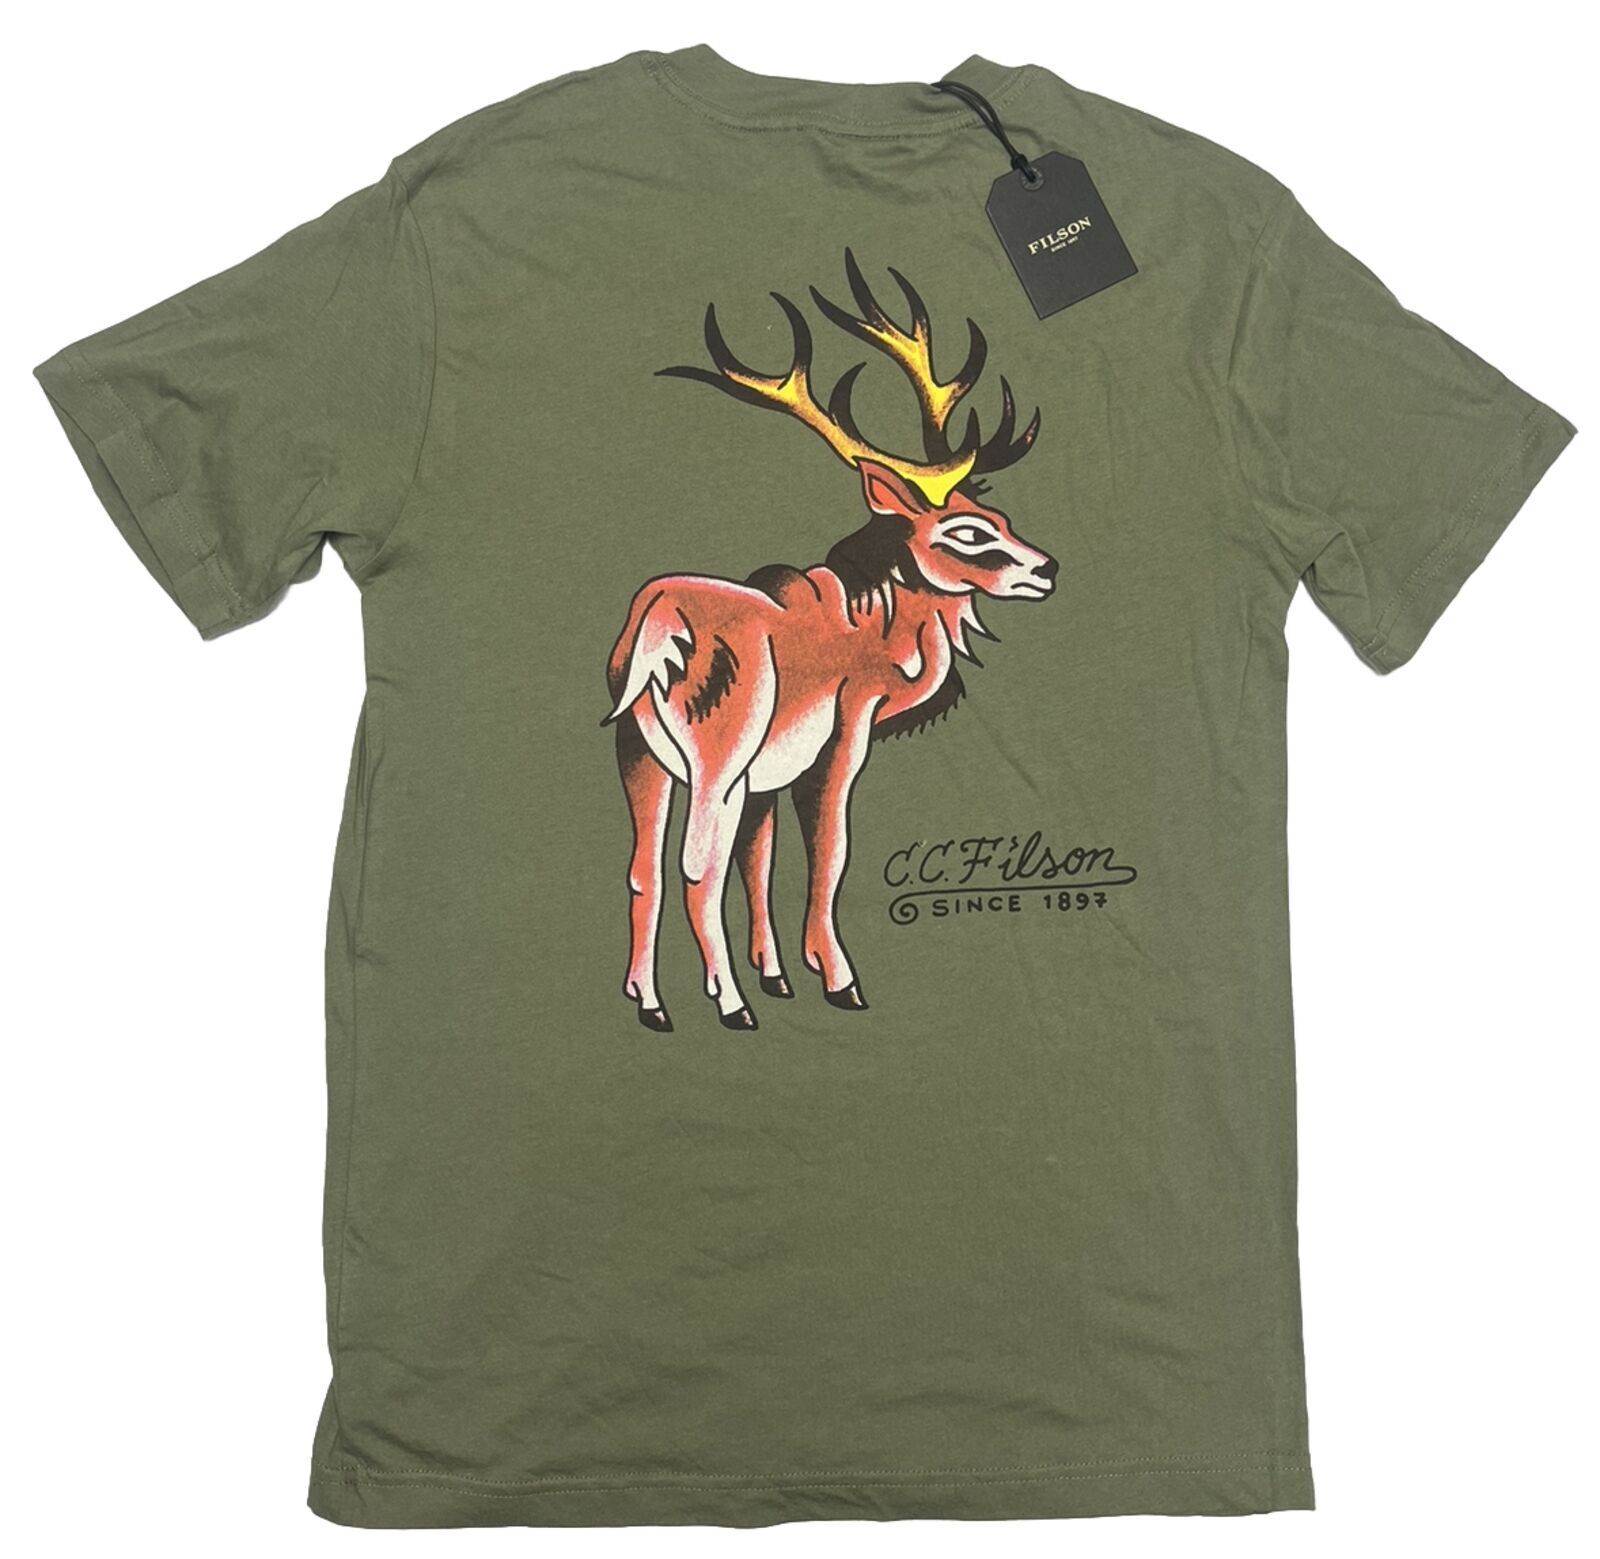 Filson Ranger Small T-Shirt Tee Soft Vintage Logo Retro Hunting S Fishing CC